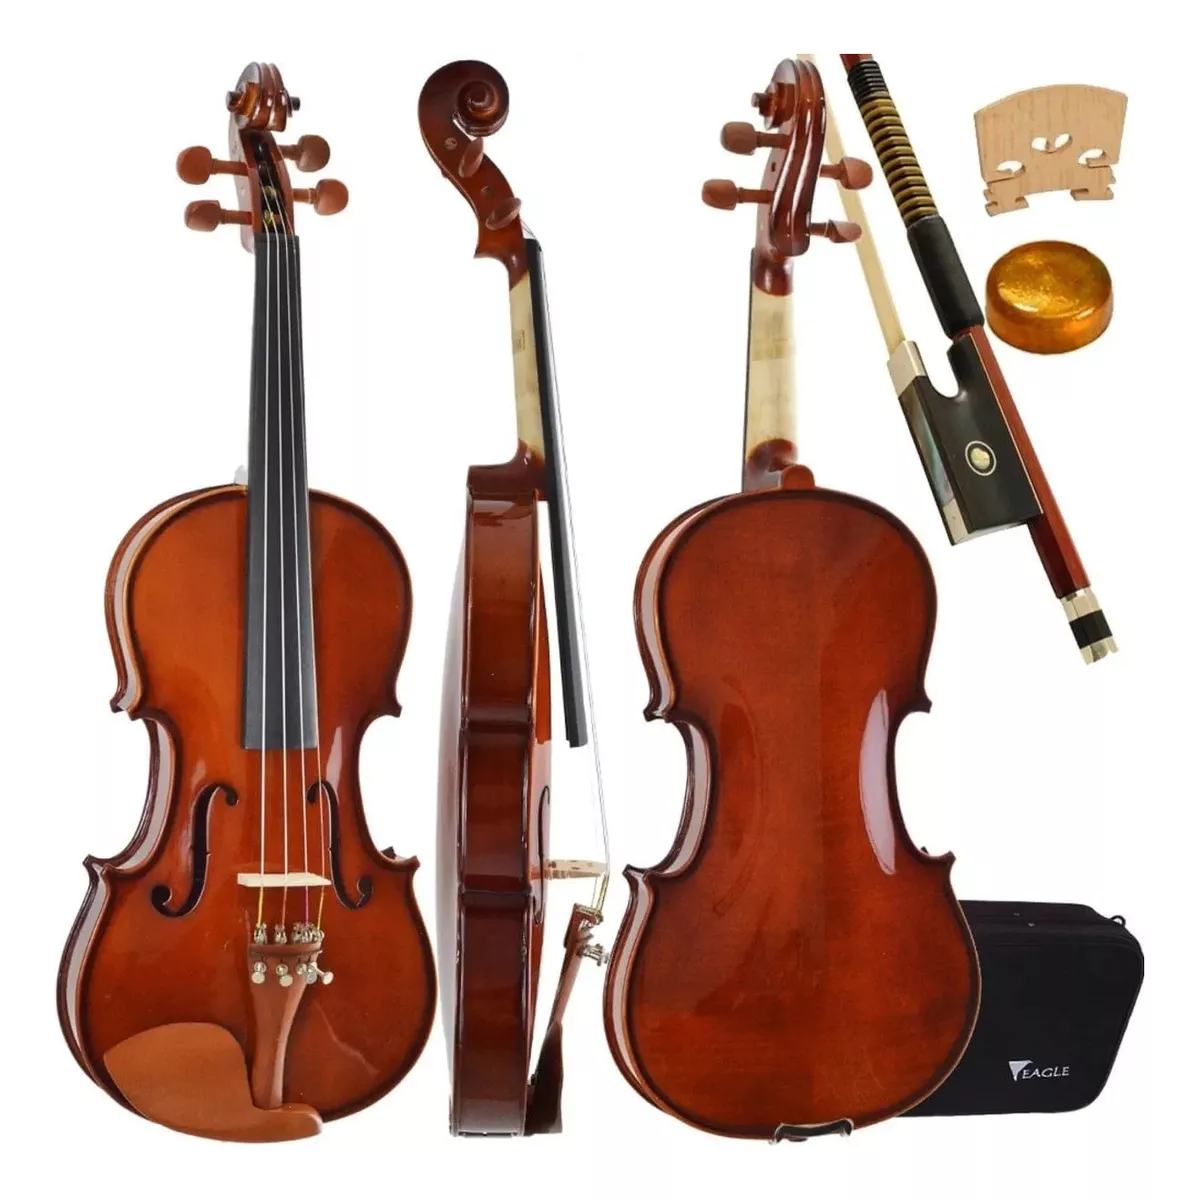 Primeira imagem para pesquisa de violino usado